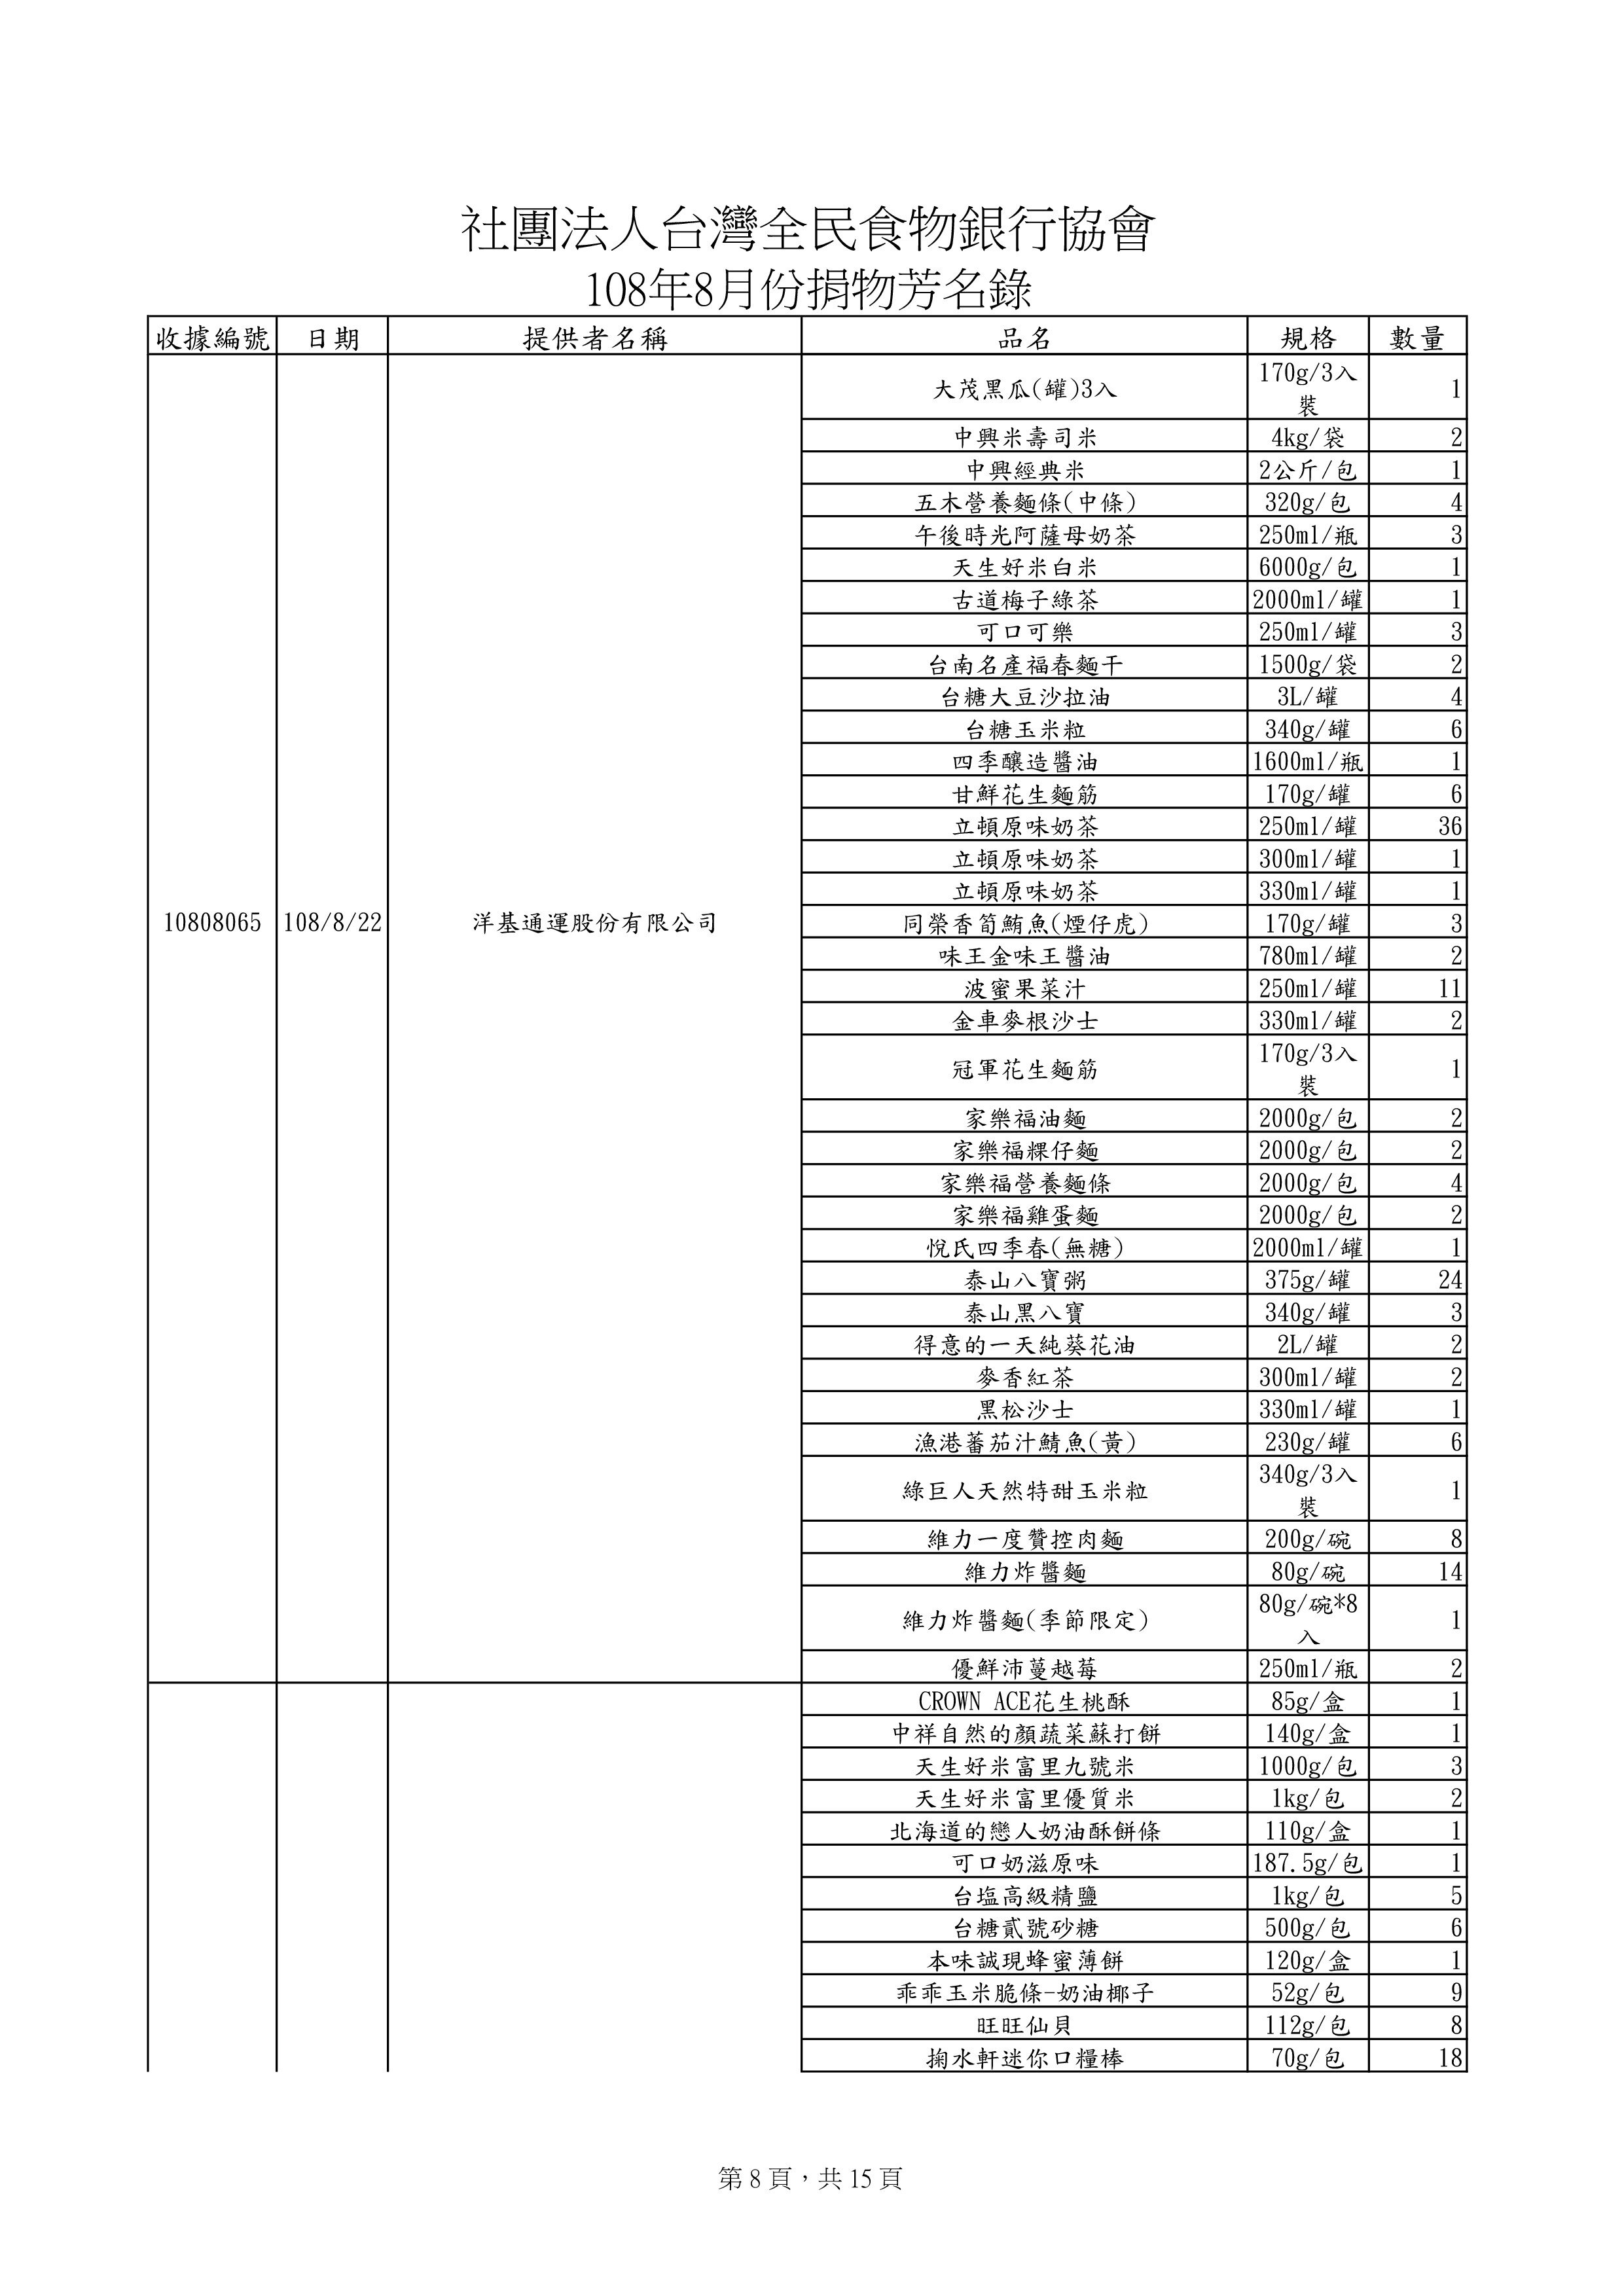 捐贈物品清單2019-8月份(系統報表)-7.jpg